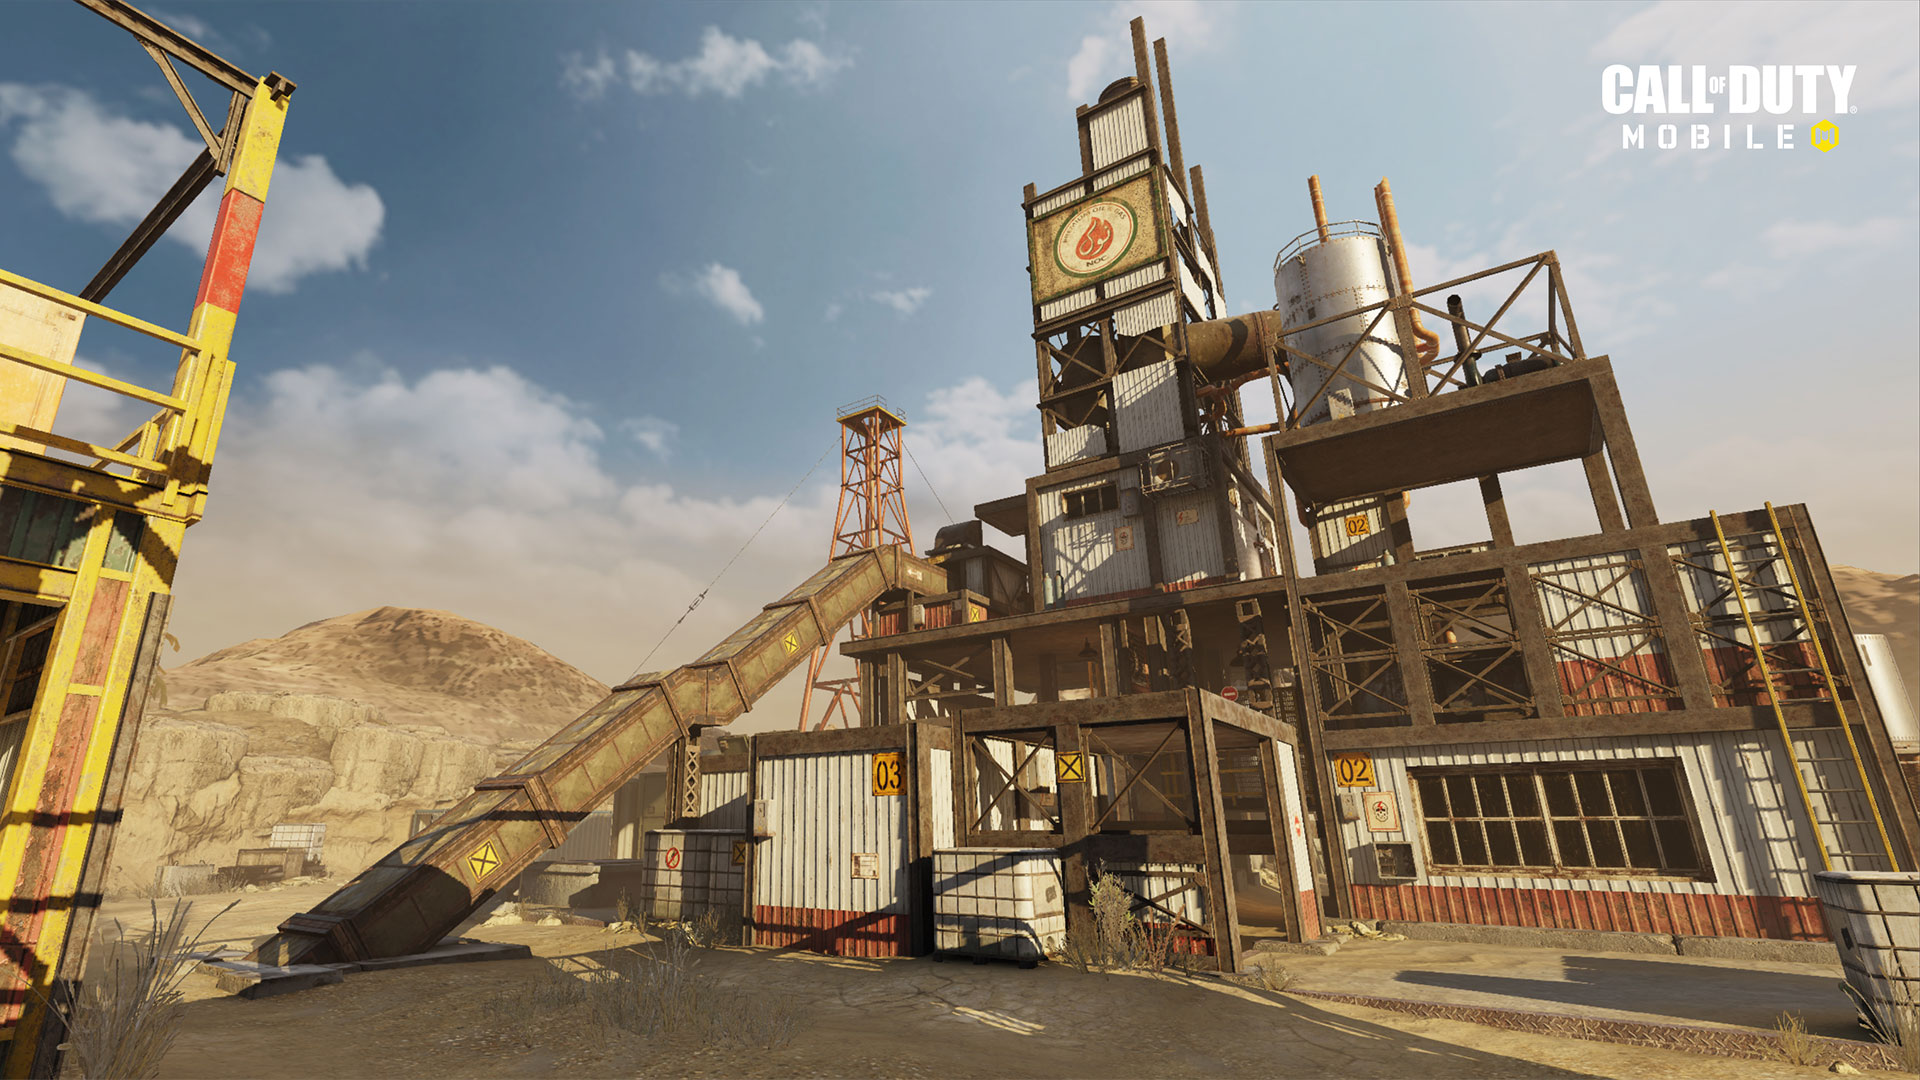 الإصدار 1.0.12 من "Call of Duty: Mobile" متاح الآن بشكل مباشر لتقديم الدعم للموسم التالي "ذات مرة في الصدأ" ، وخرائط جديدة ، وموسم جديد مصنّف ، والمزيد 173